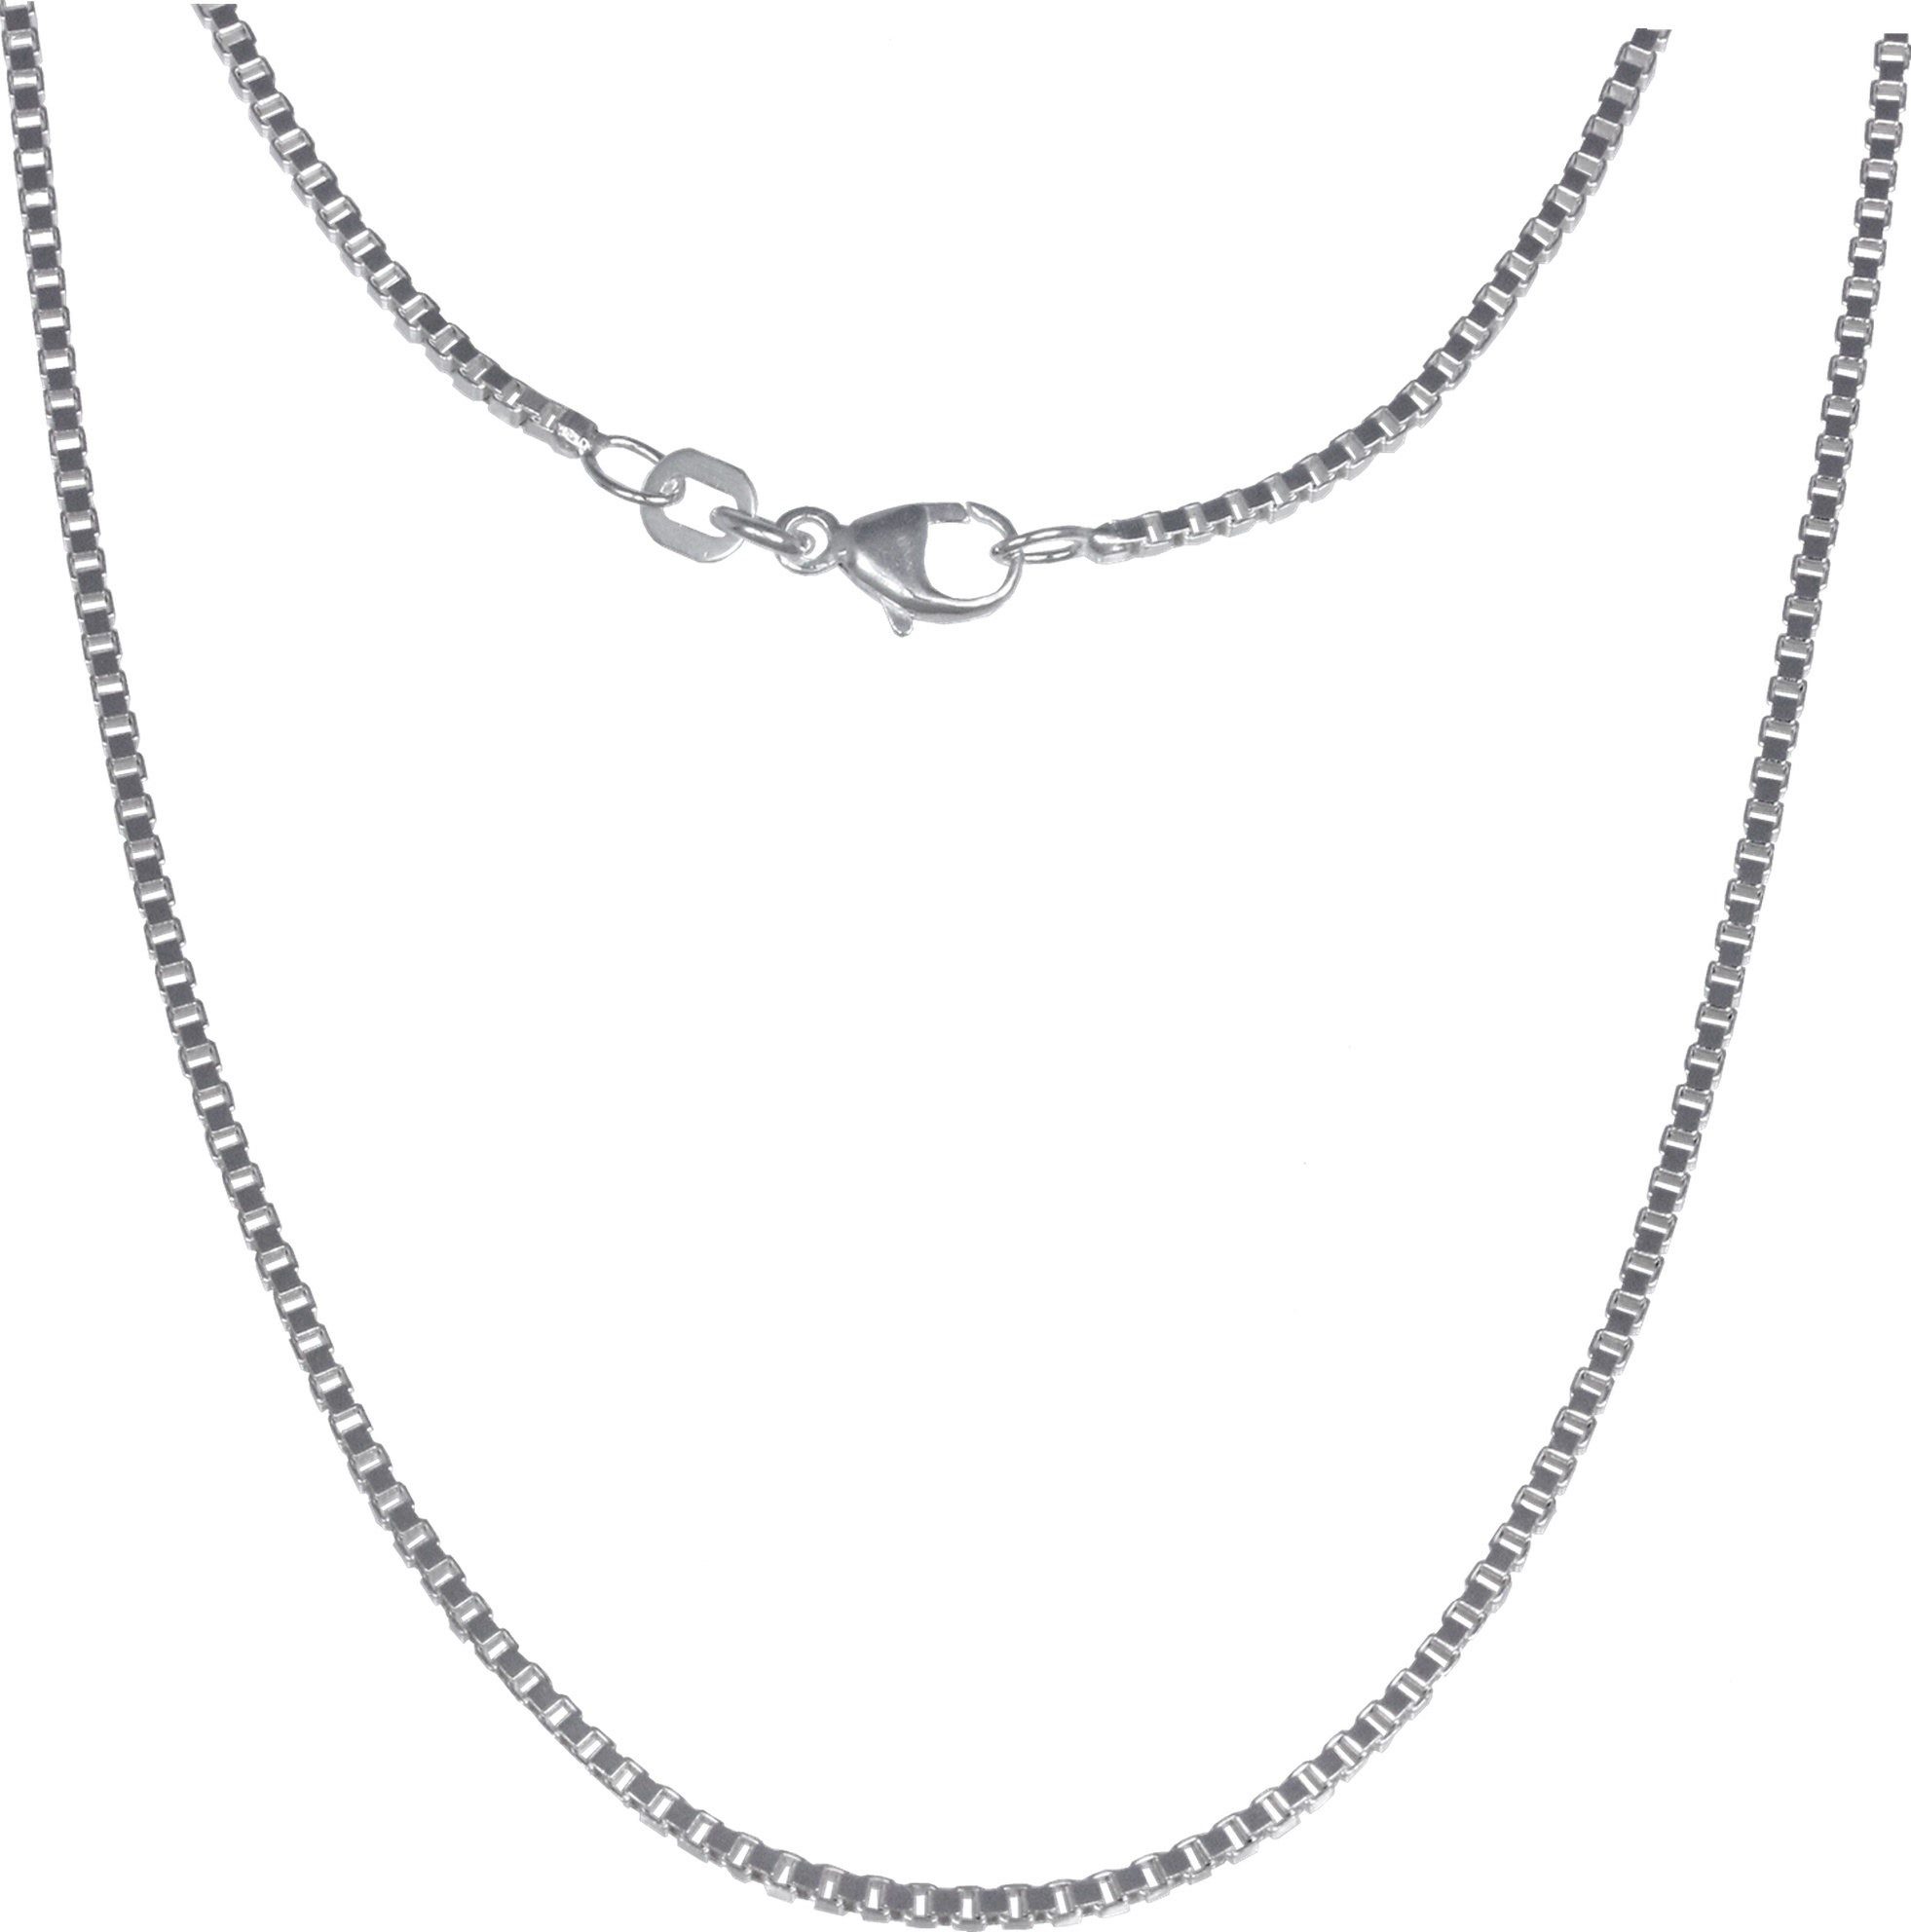 SilberDream Silberkette SilberDream Halskette Silber Schmuck, Halsketten ca. 70cm, 925 Sterling Silber, Farbe: silber, Made-In Germa